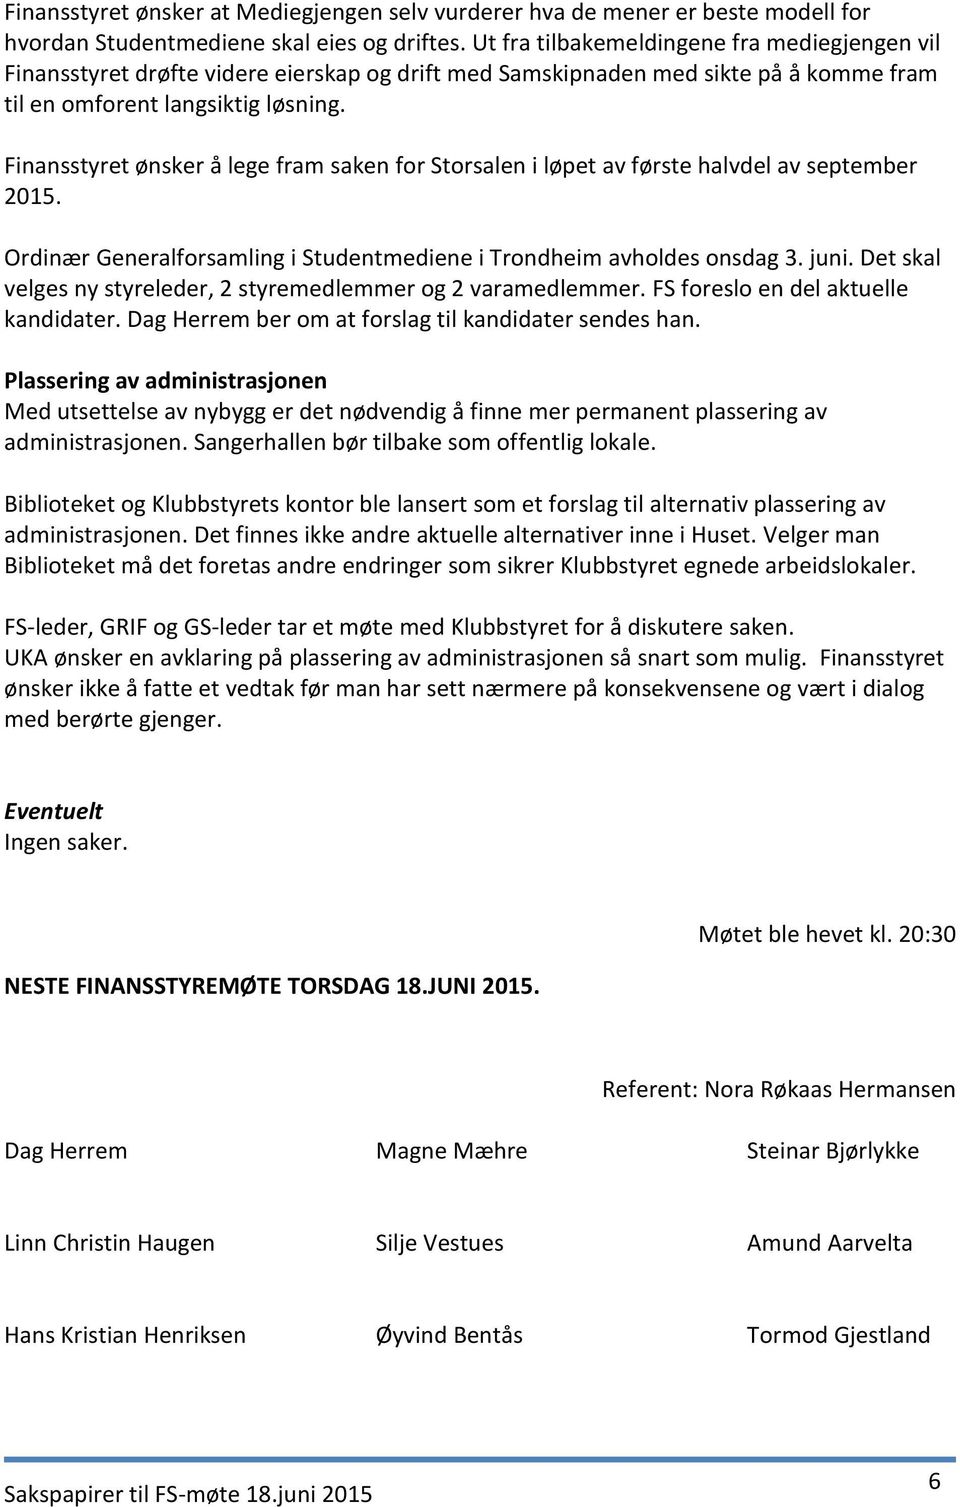 Finansstyret ønsker å lege fram saken for Storsalen i løpet av første halvdel av september 2015. Ordinær Generalforsamling i Studentmediene i Trondheim avholdes onsdag 3. juni.